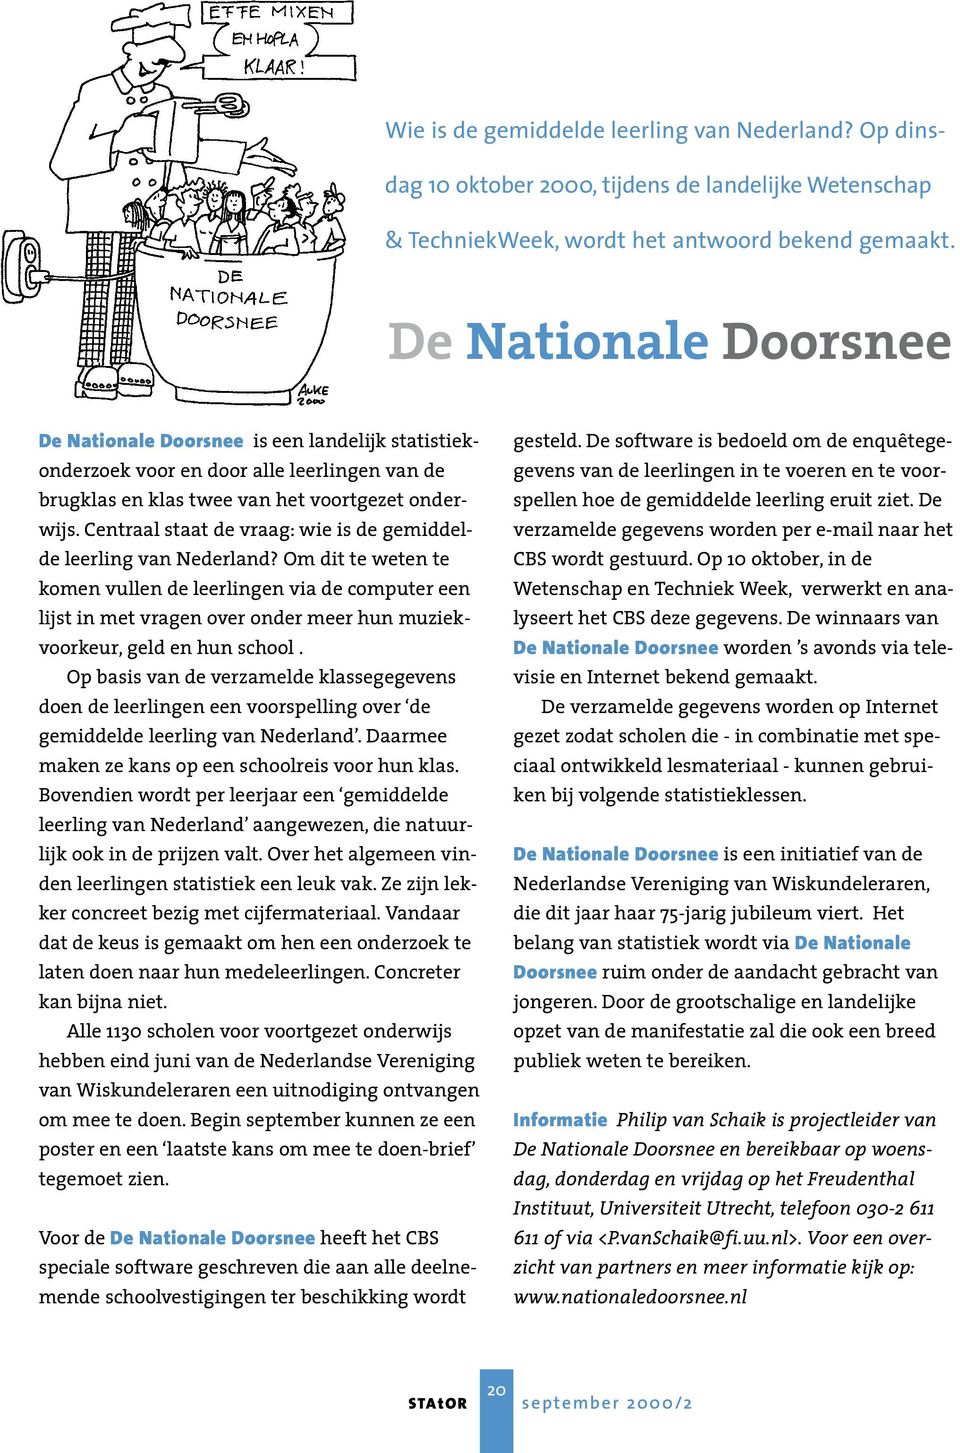 Centraal staat de vraag: wie is de gemiddelde leerling van Nederland?